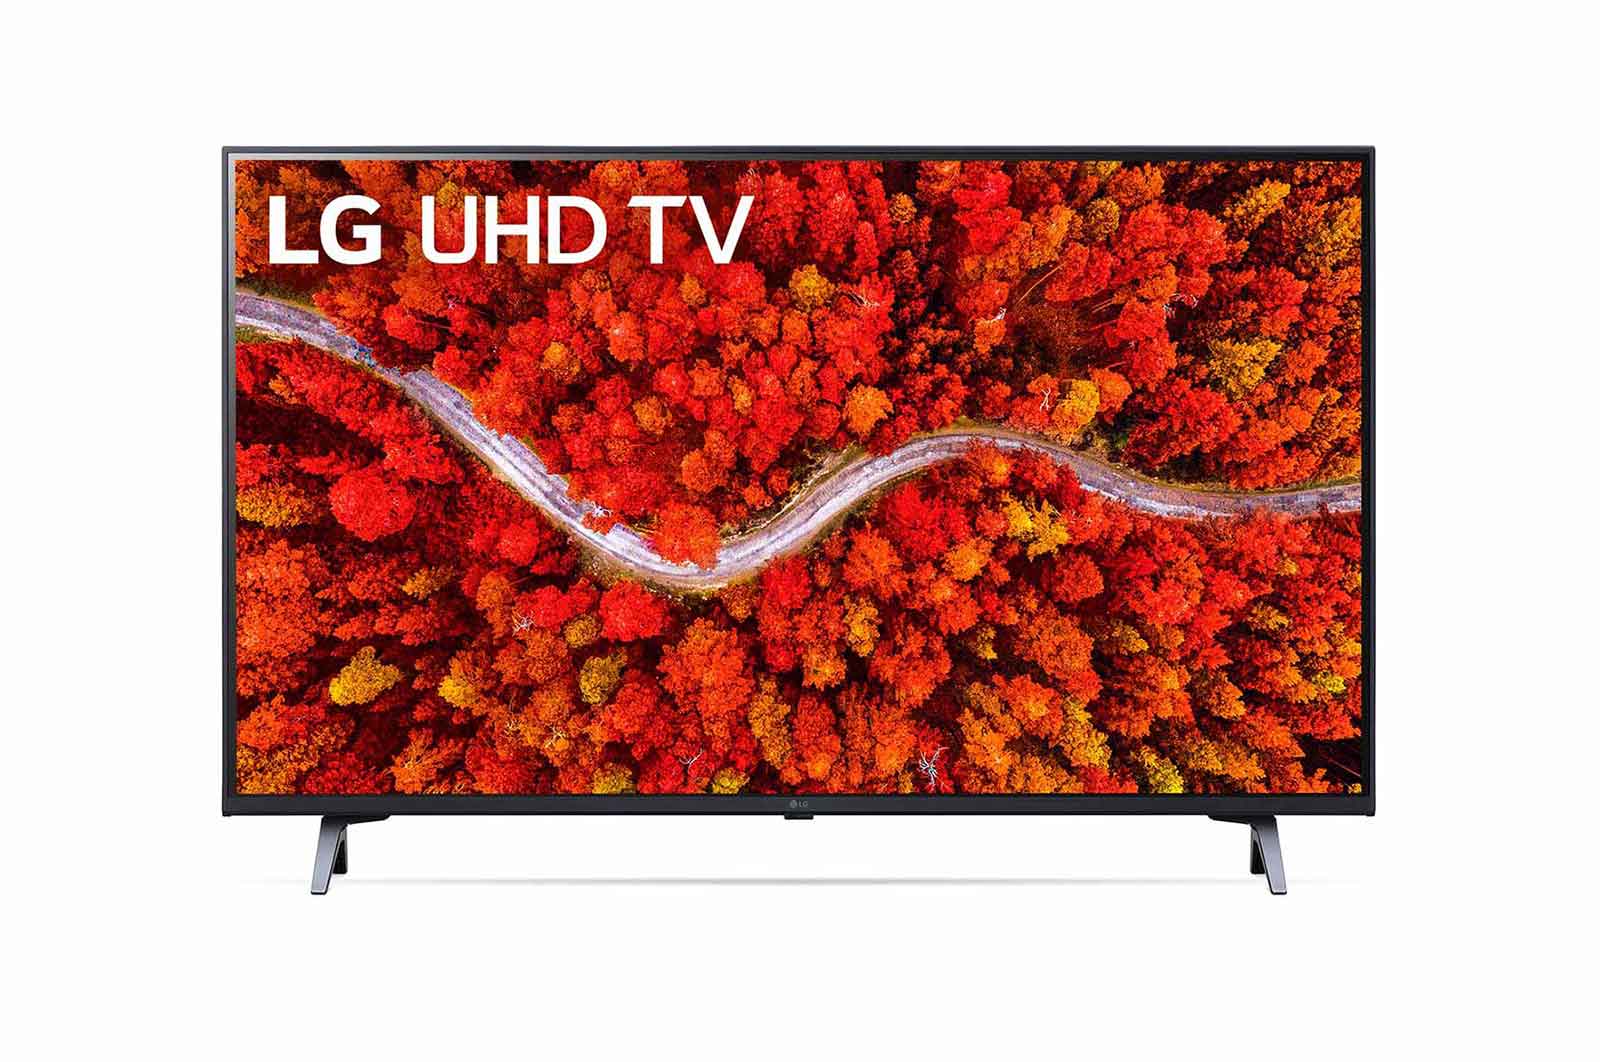 LG - LED TV 55UP8000PTB